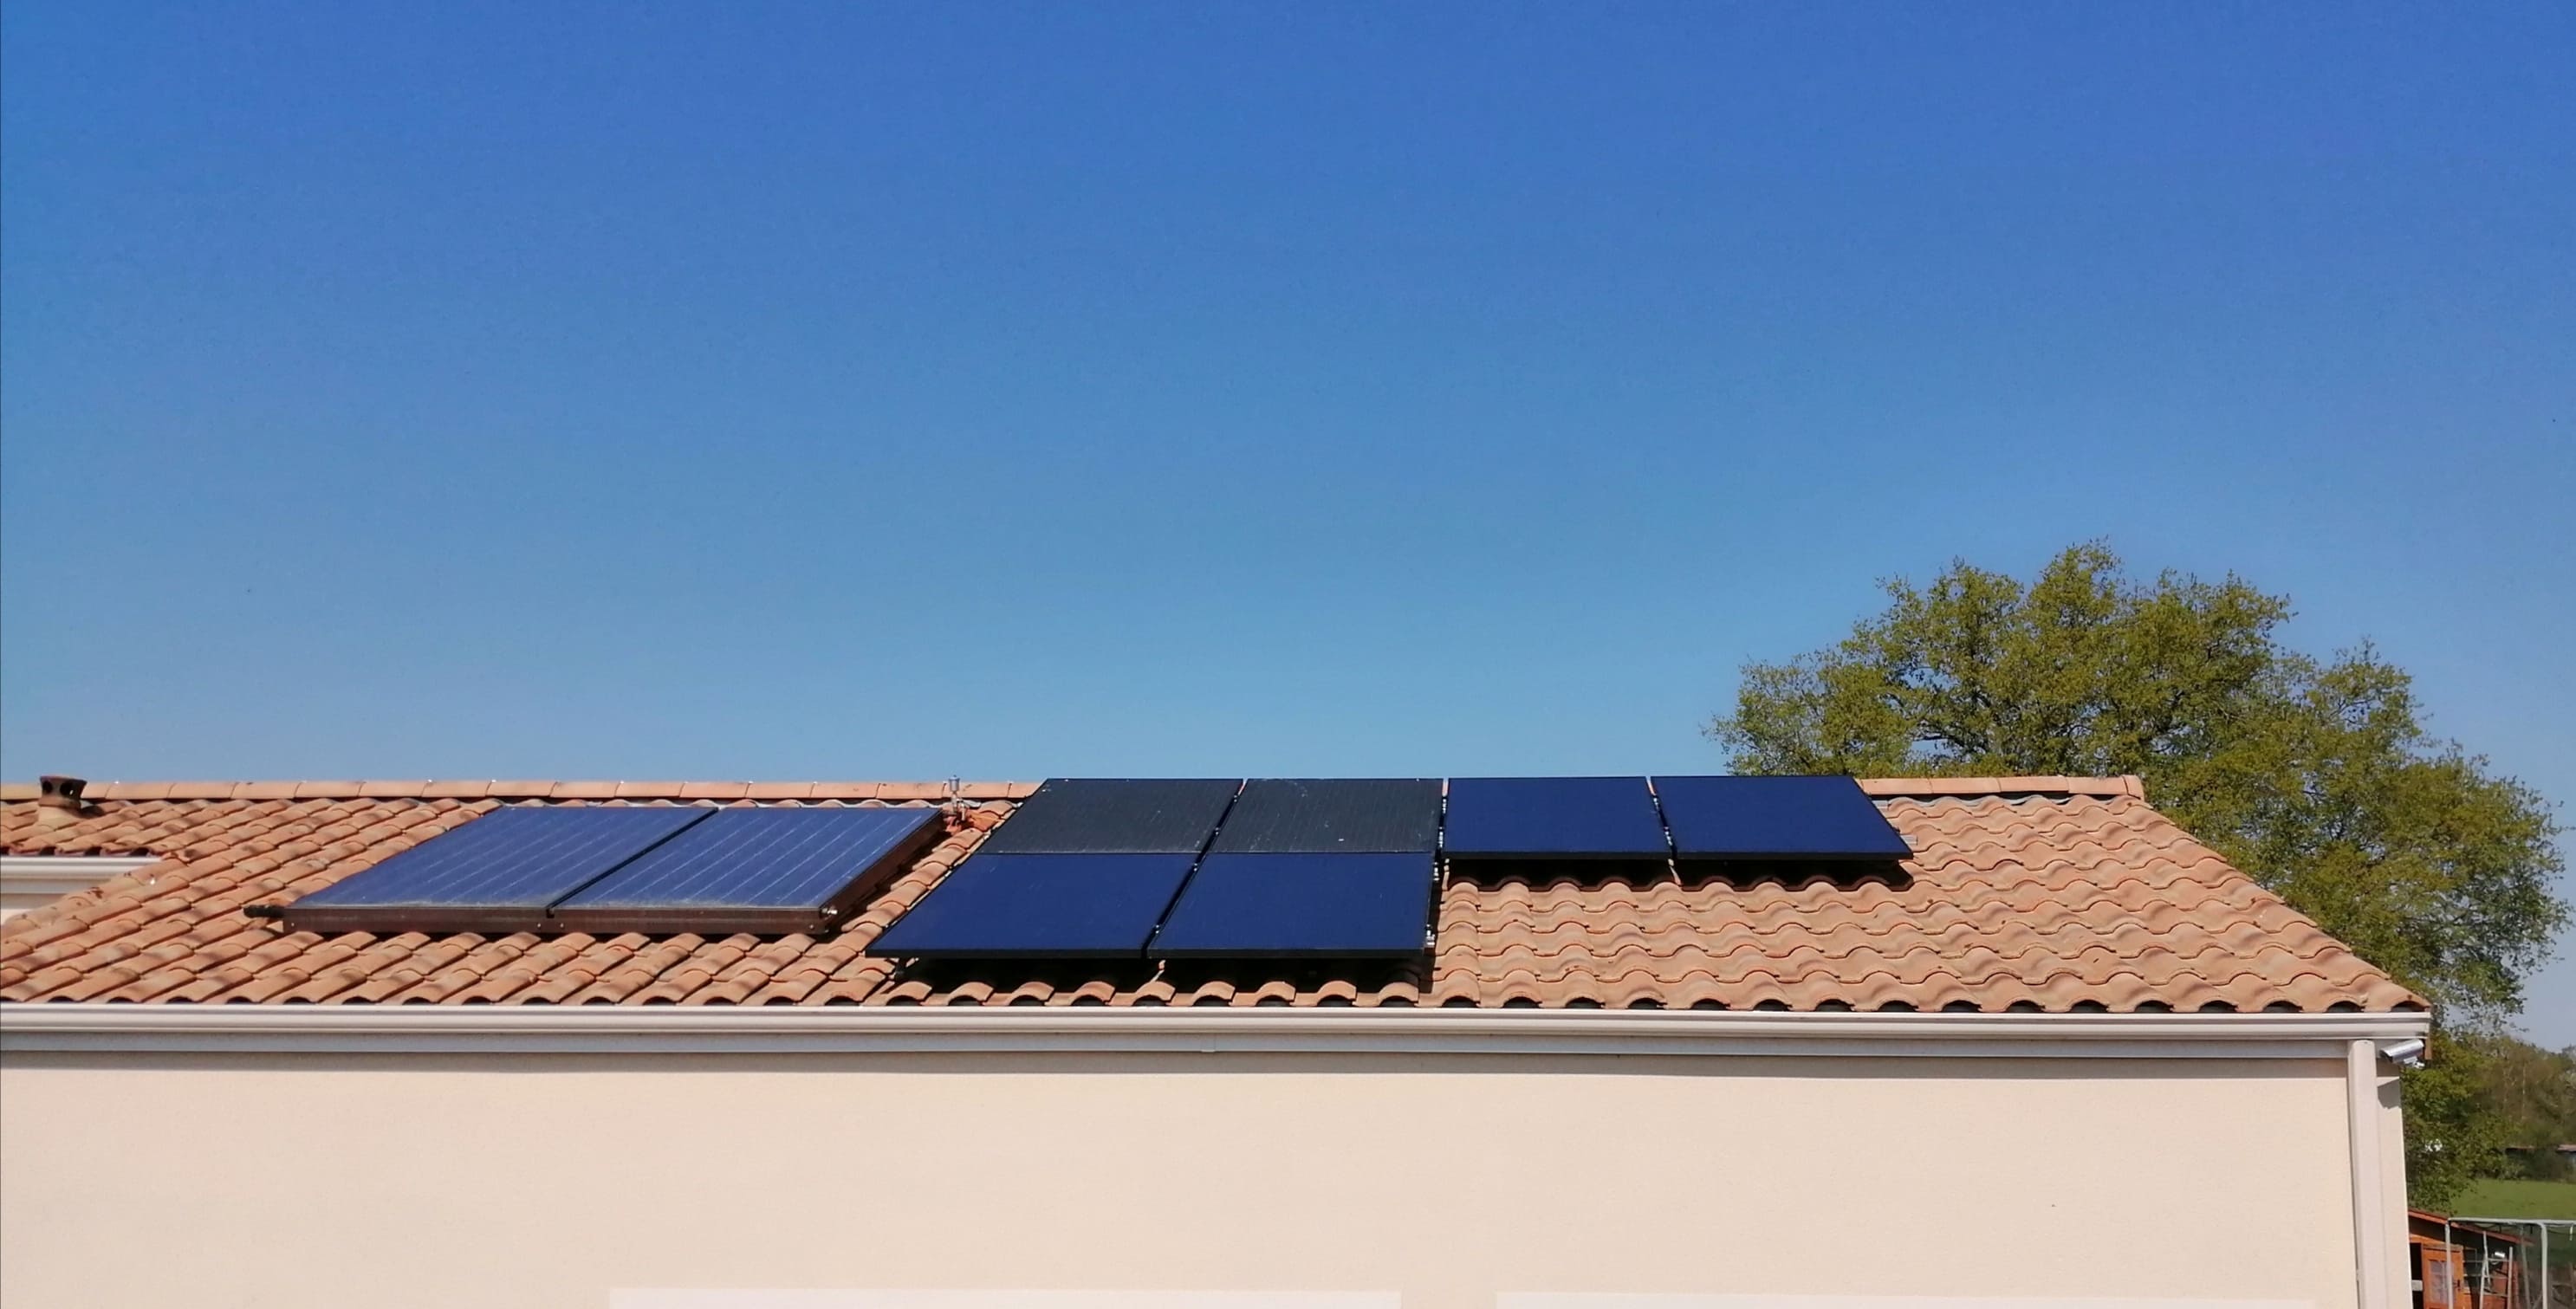 <span class="popup-mms-1">Installation de panneaux solaires sur toiture inclinée - 2400W</span>